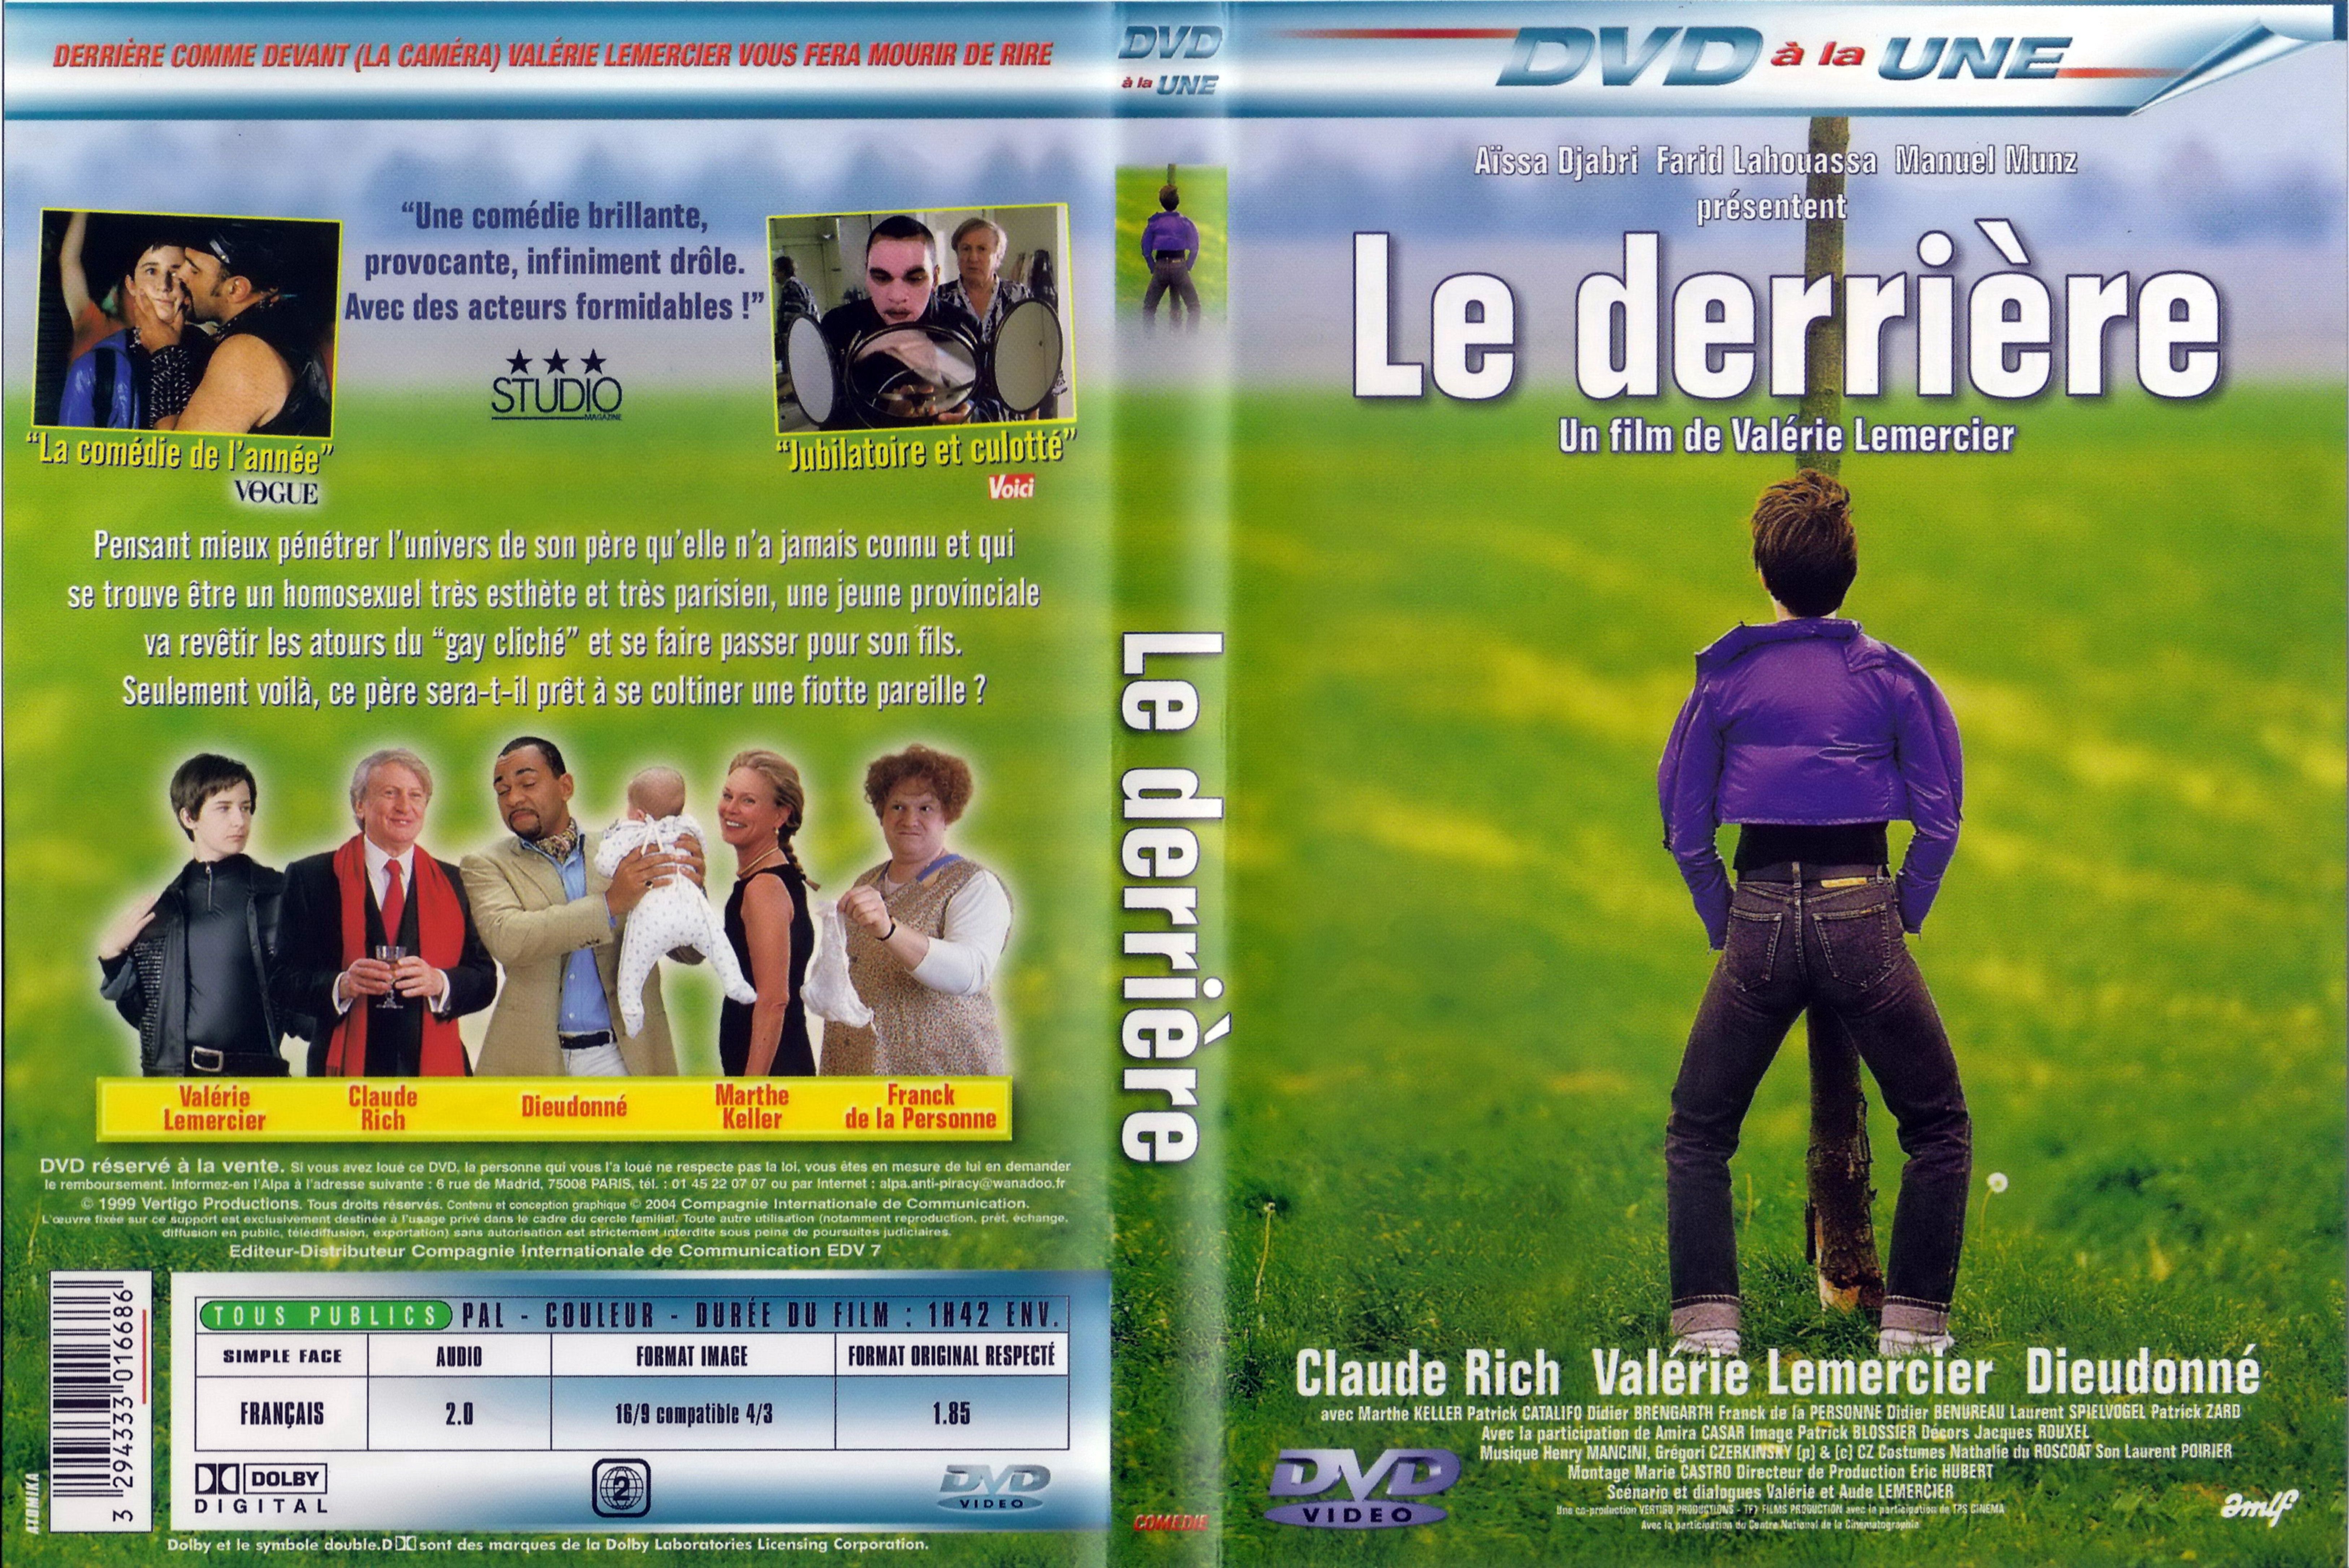 Jaquette DVD Le derrire v3